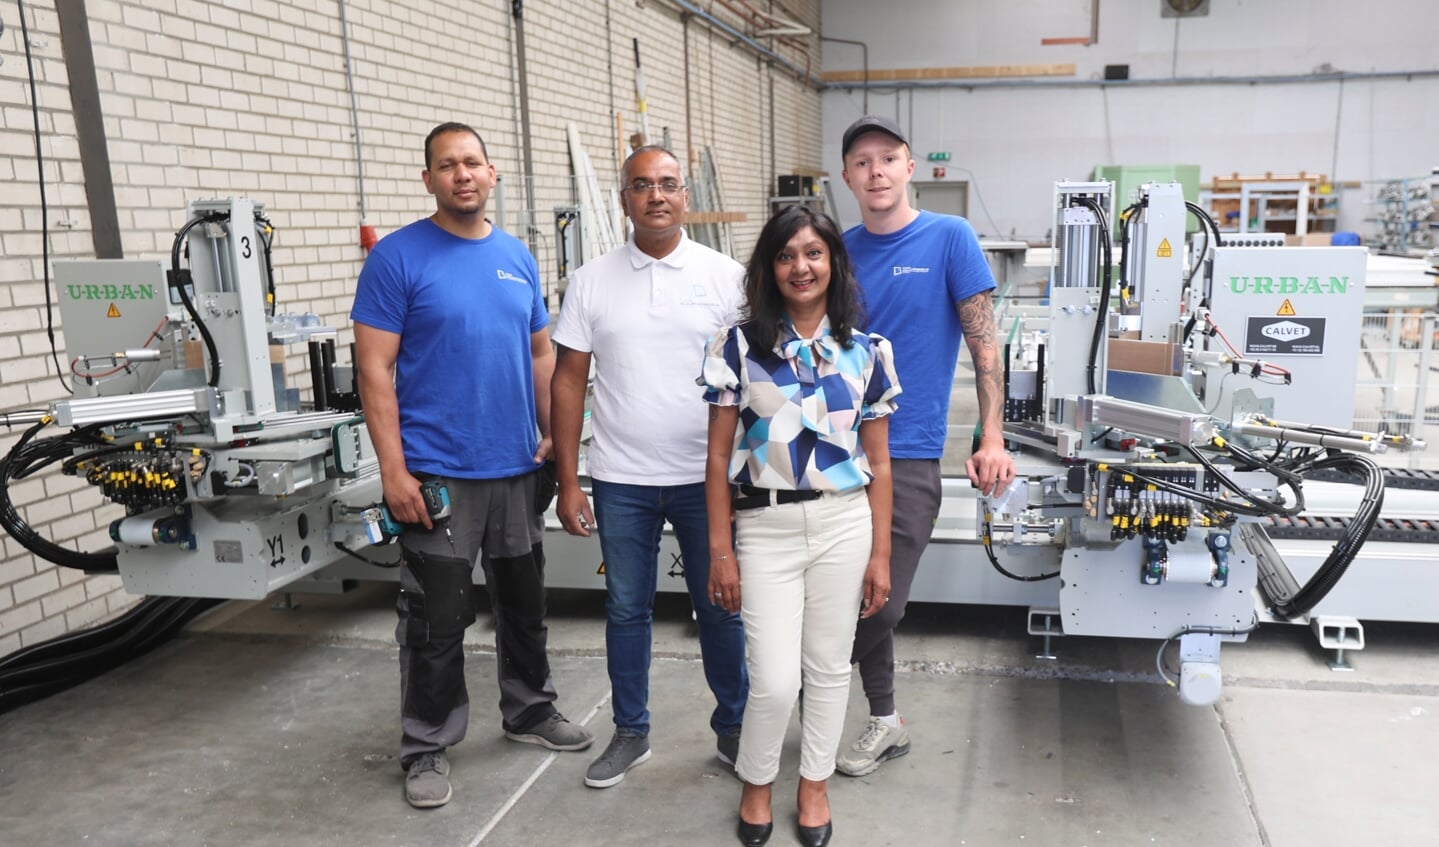 De medewerkers van de Flevo Kozijnenfabriek met in het midden eigenaren Radjesh en Geeta Ramkhelawan. (Foto: Fred Rotgans)